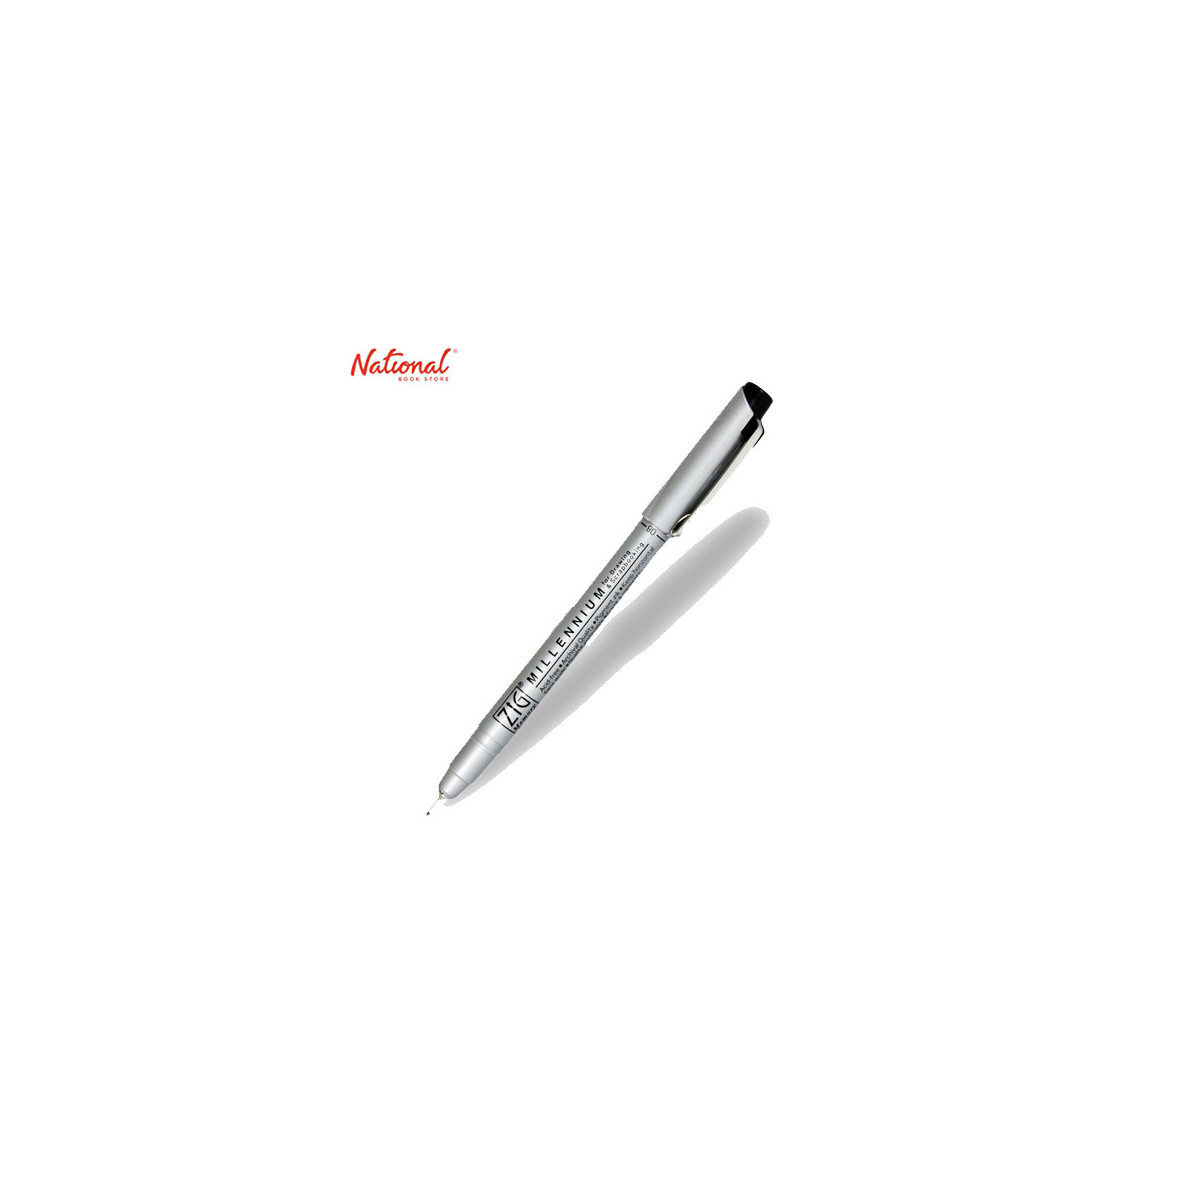 Zig Millenium Drawing Pen Pure Black 0.8mm MS-08/010